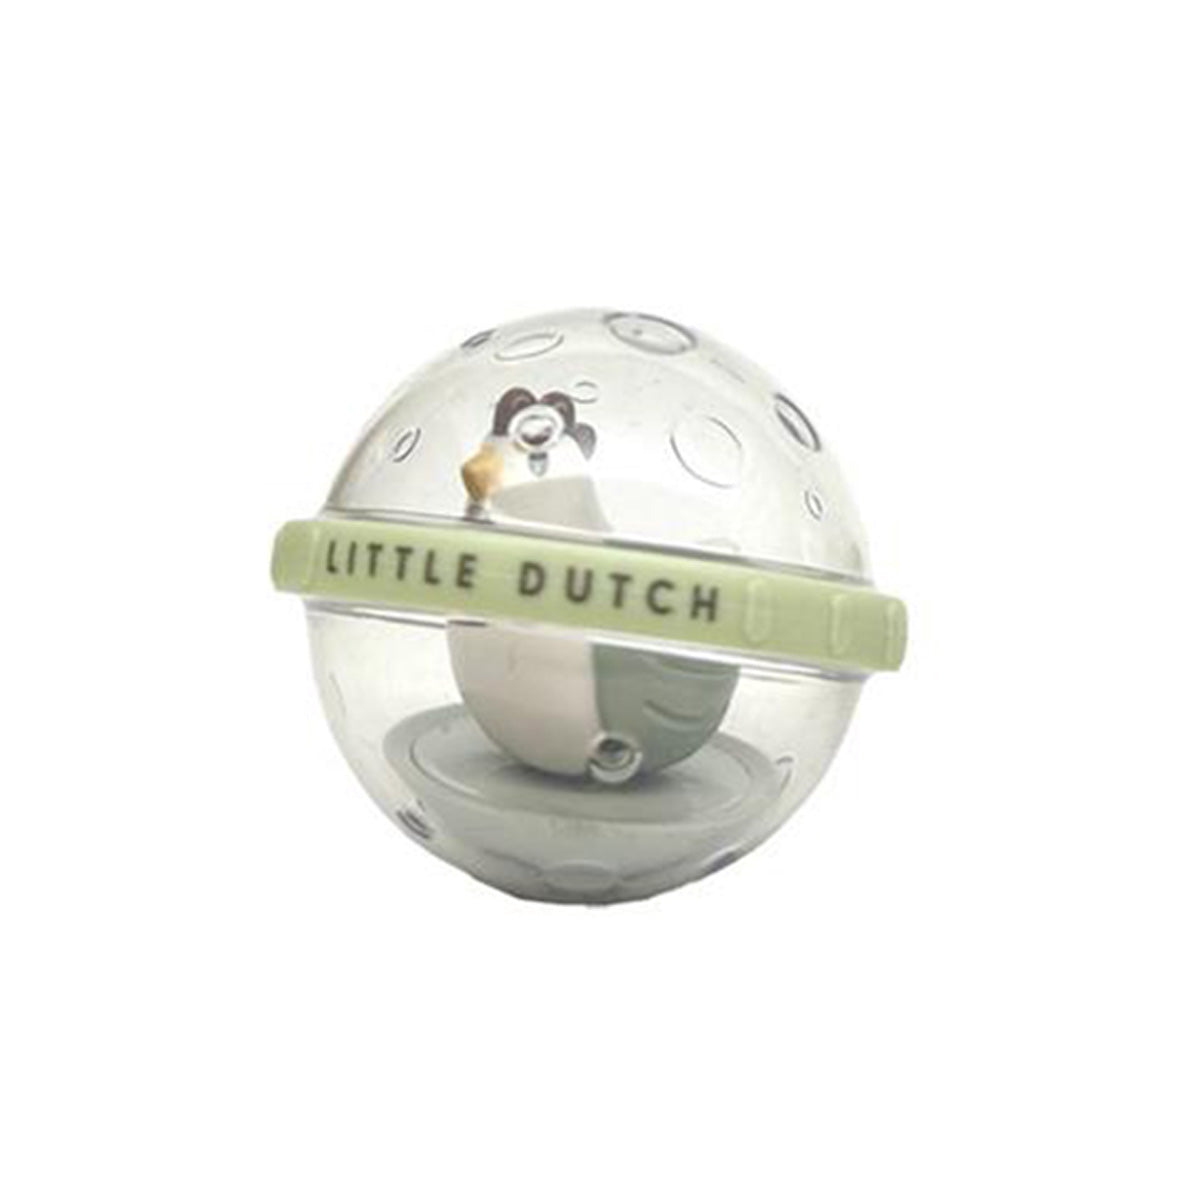 Breng de boerderij naar elk speelmoment van je kleintje met de farm roterende ballen van het merk Little Dutch! Deze vrolijke set biedt een interactieve en stimulerende ervaring voor kleine ontdekkingsreizigers. VanZus